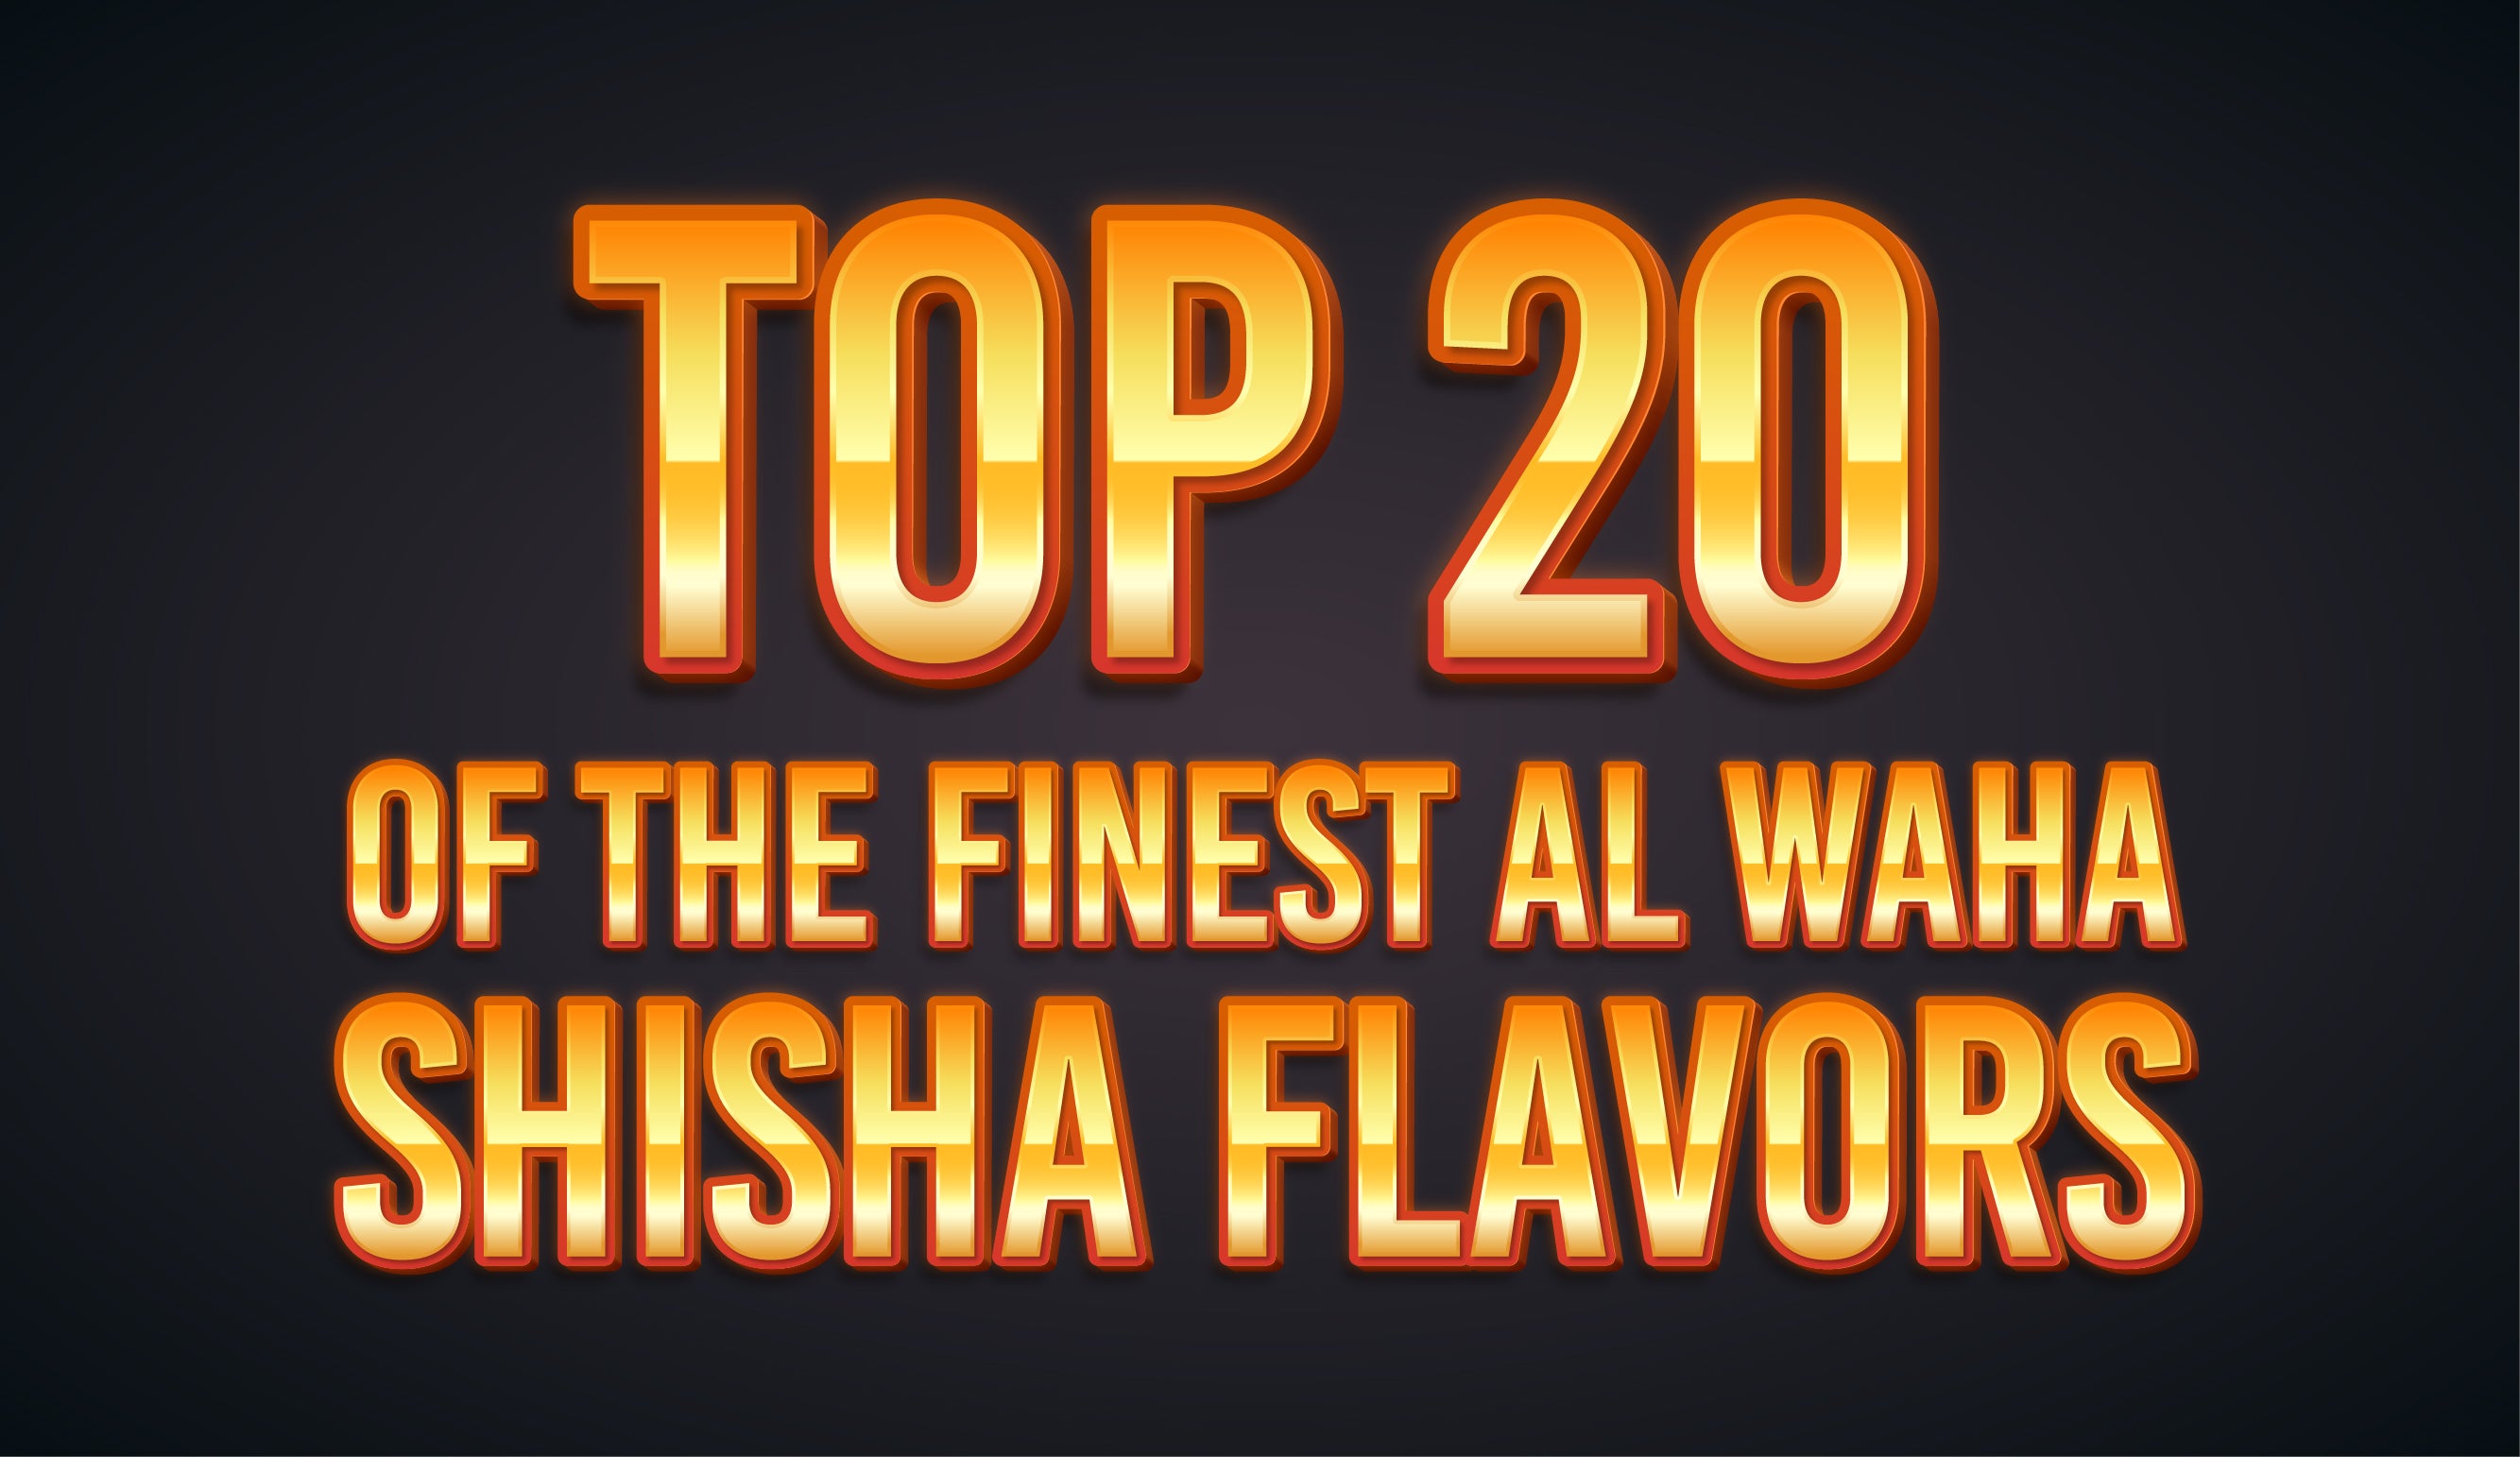 Top 20 of the Finest Al Waha Shisha Flavors